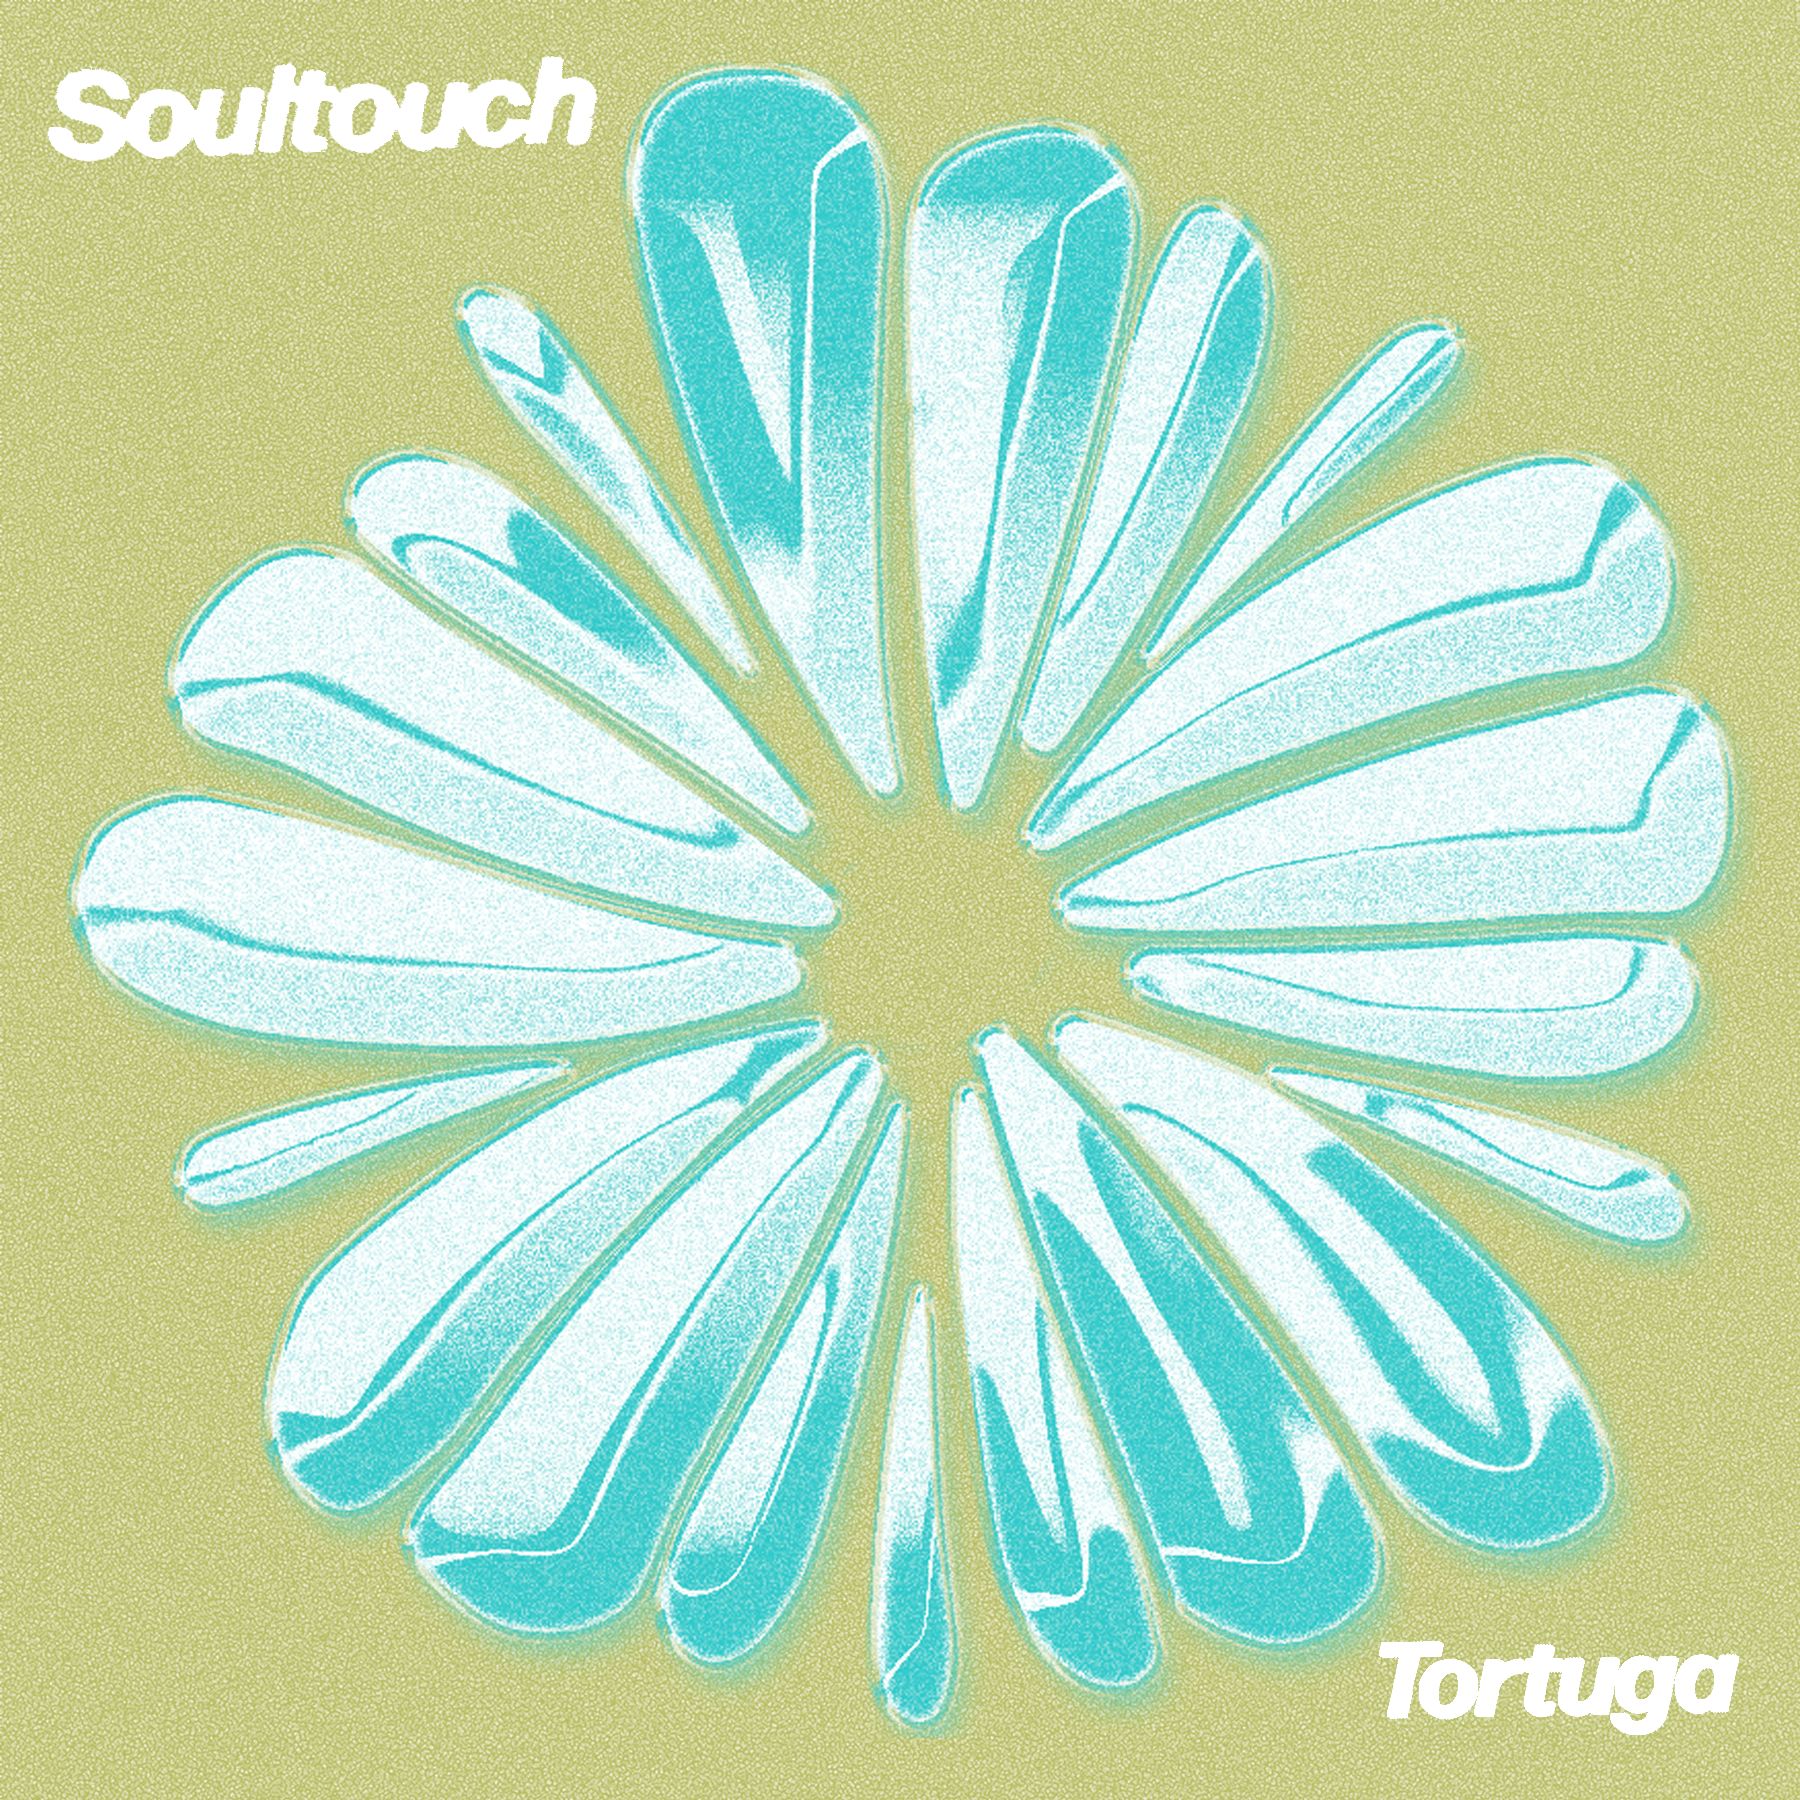 Daxistin PREMIERE : Tortuga - Soultouch